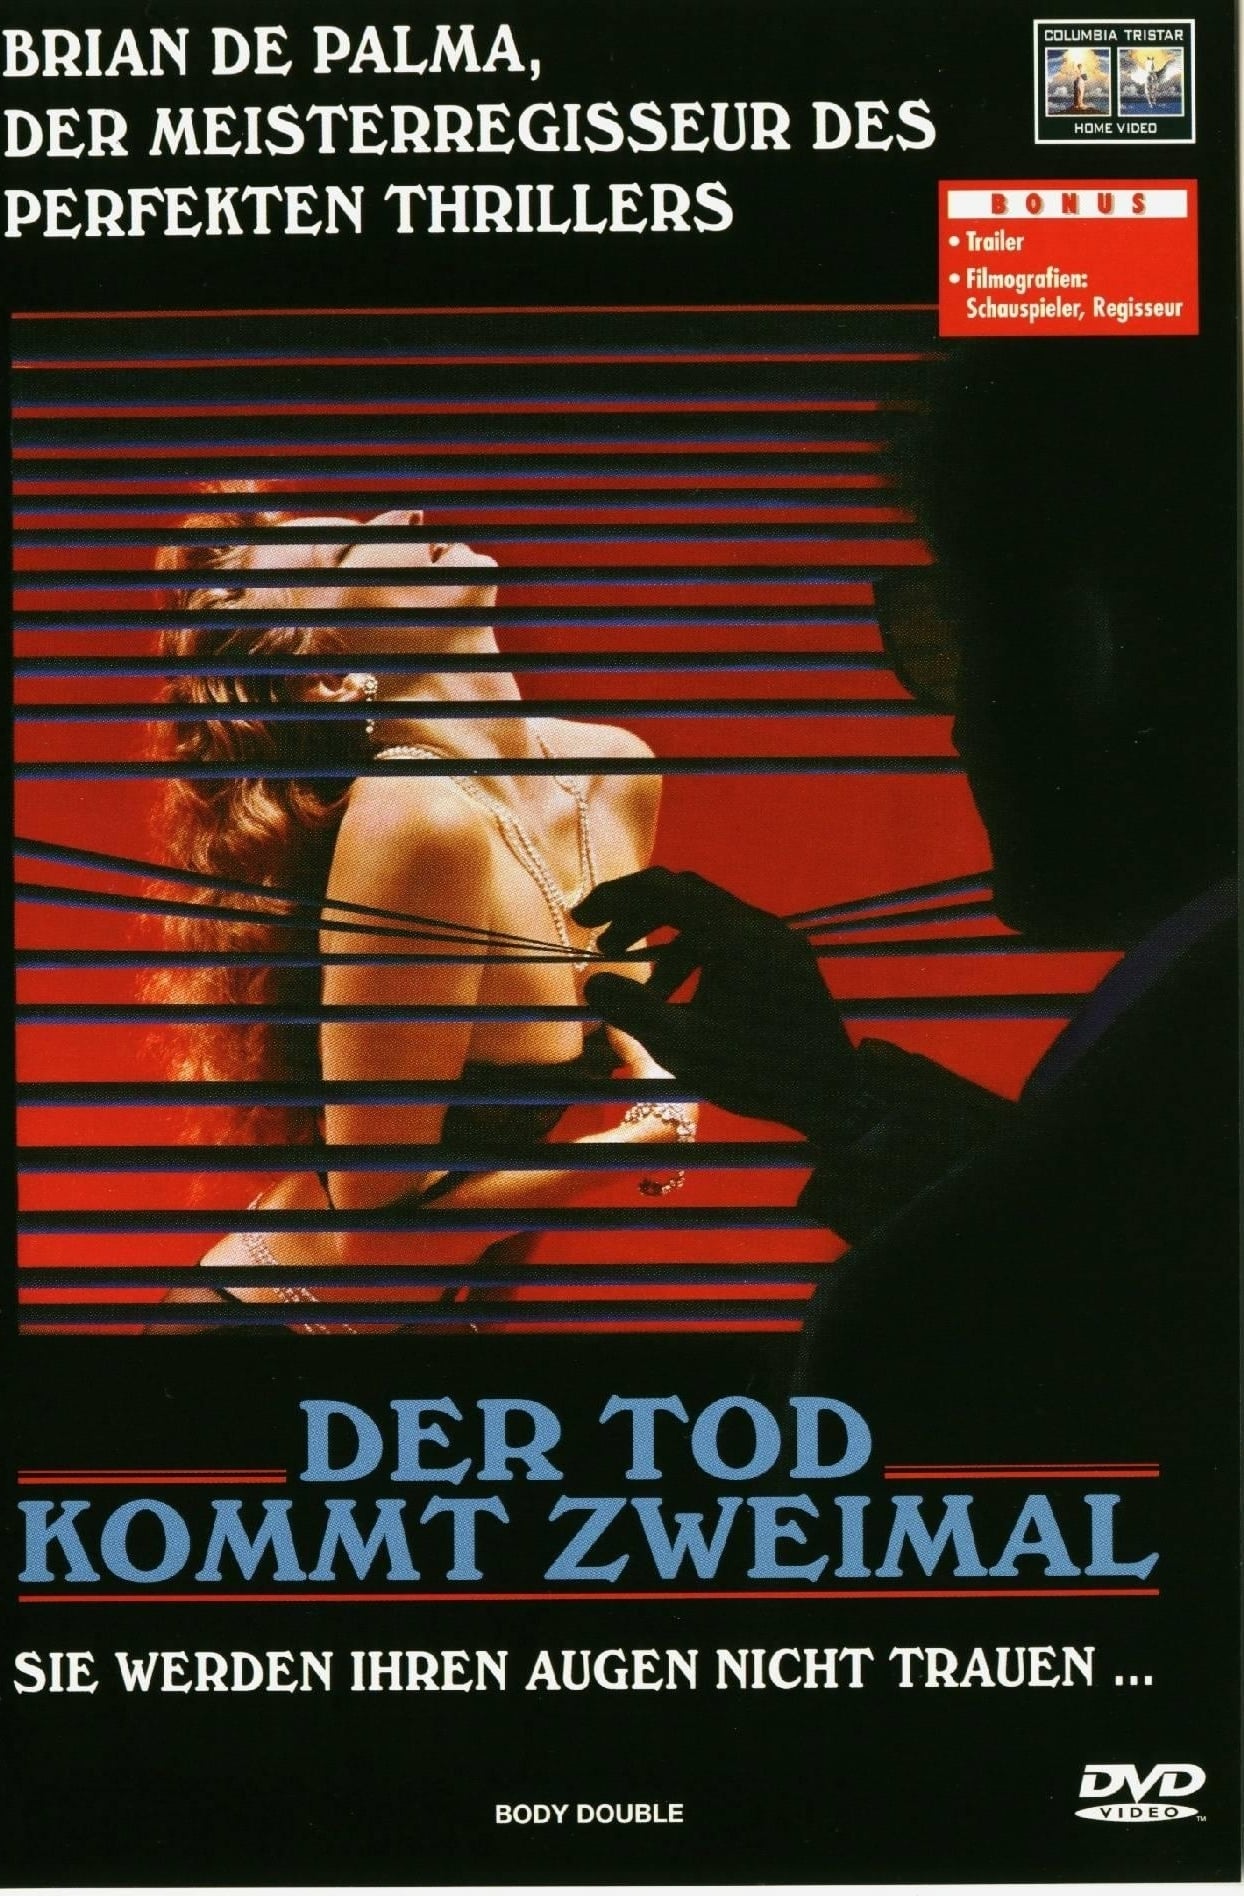 Plakat von "Der Tod kommt zweimal"